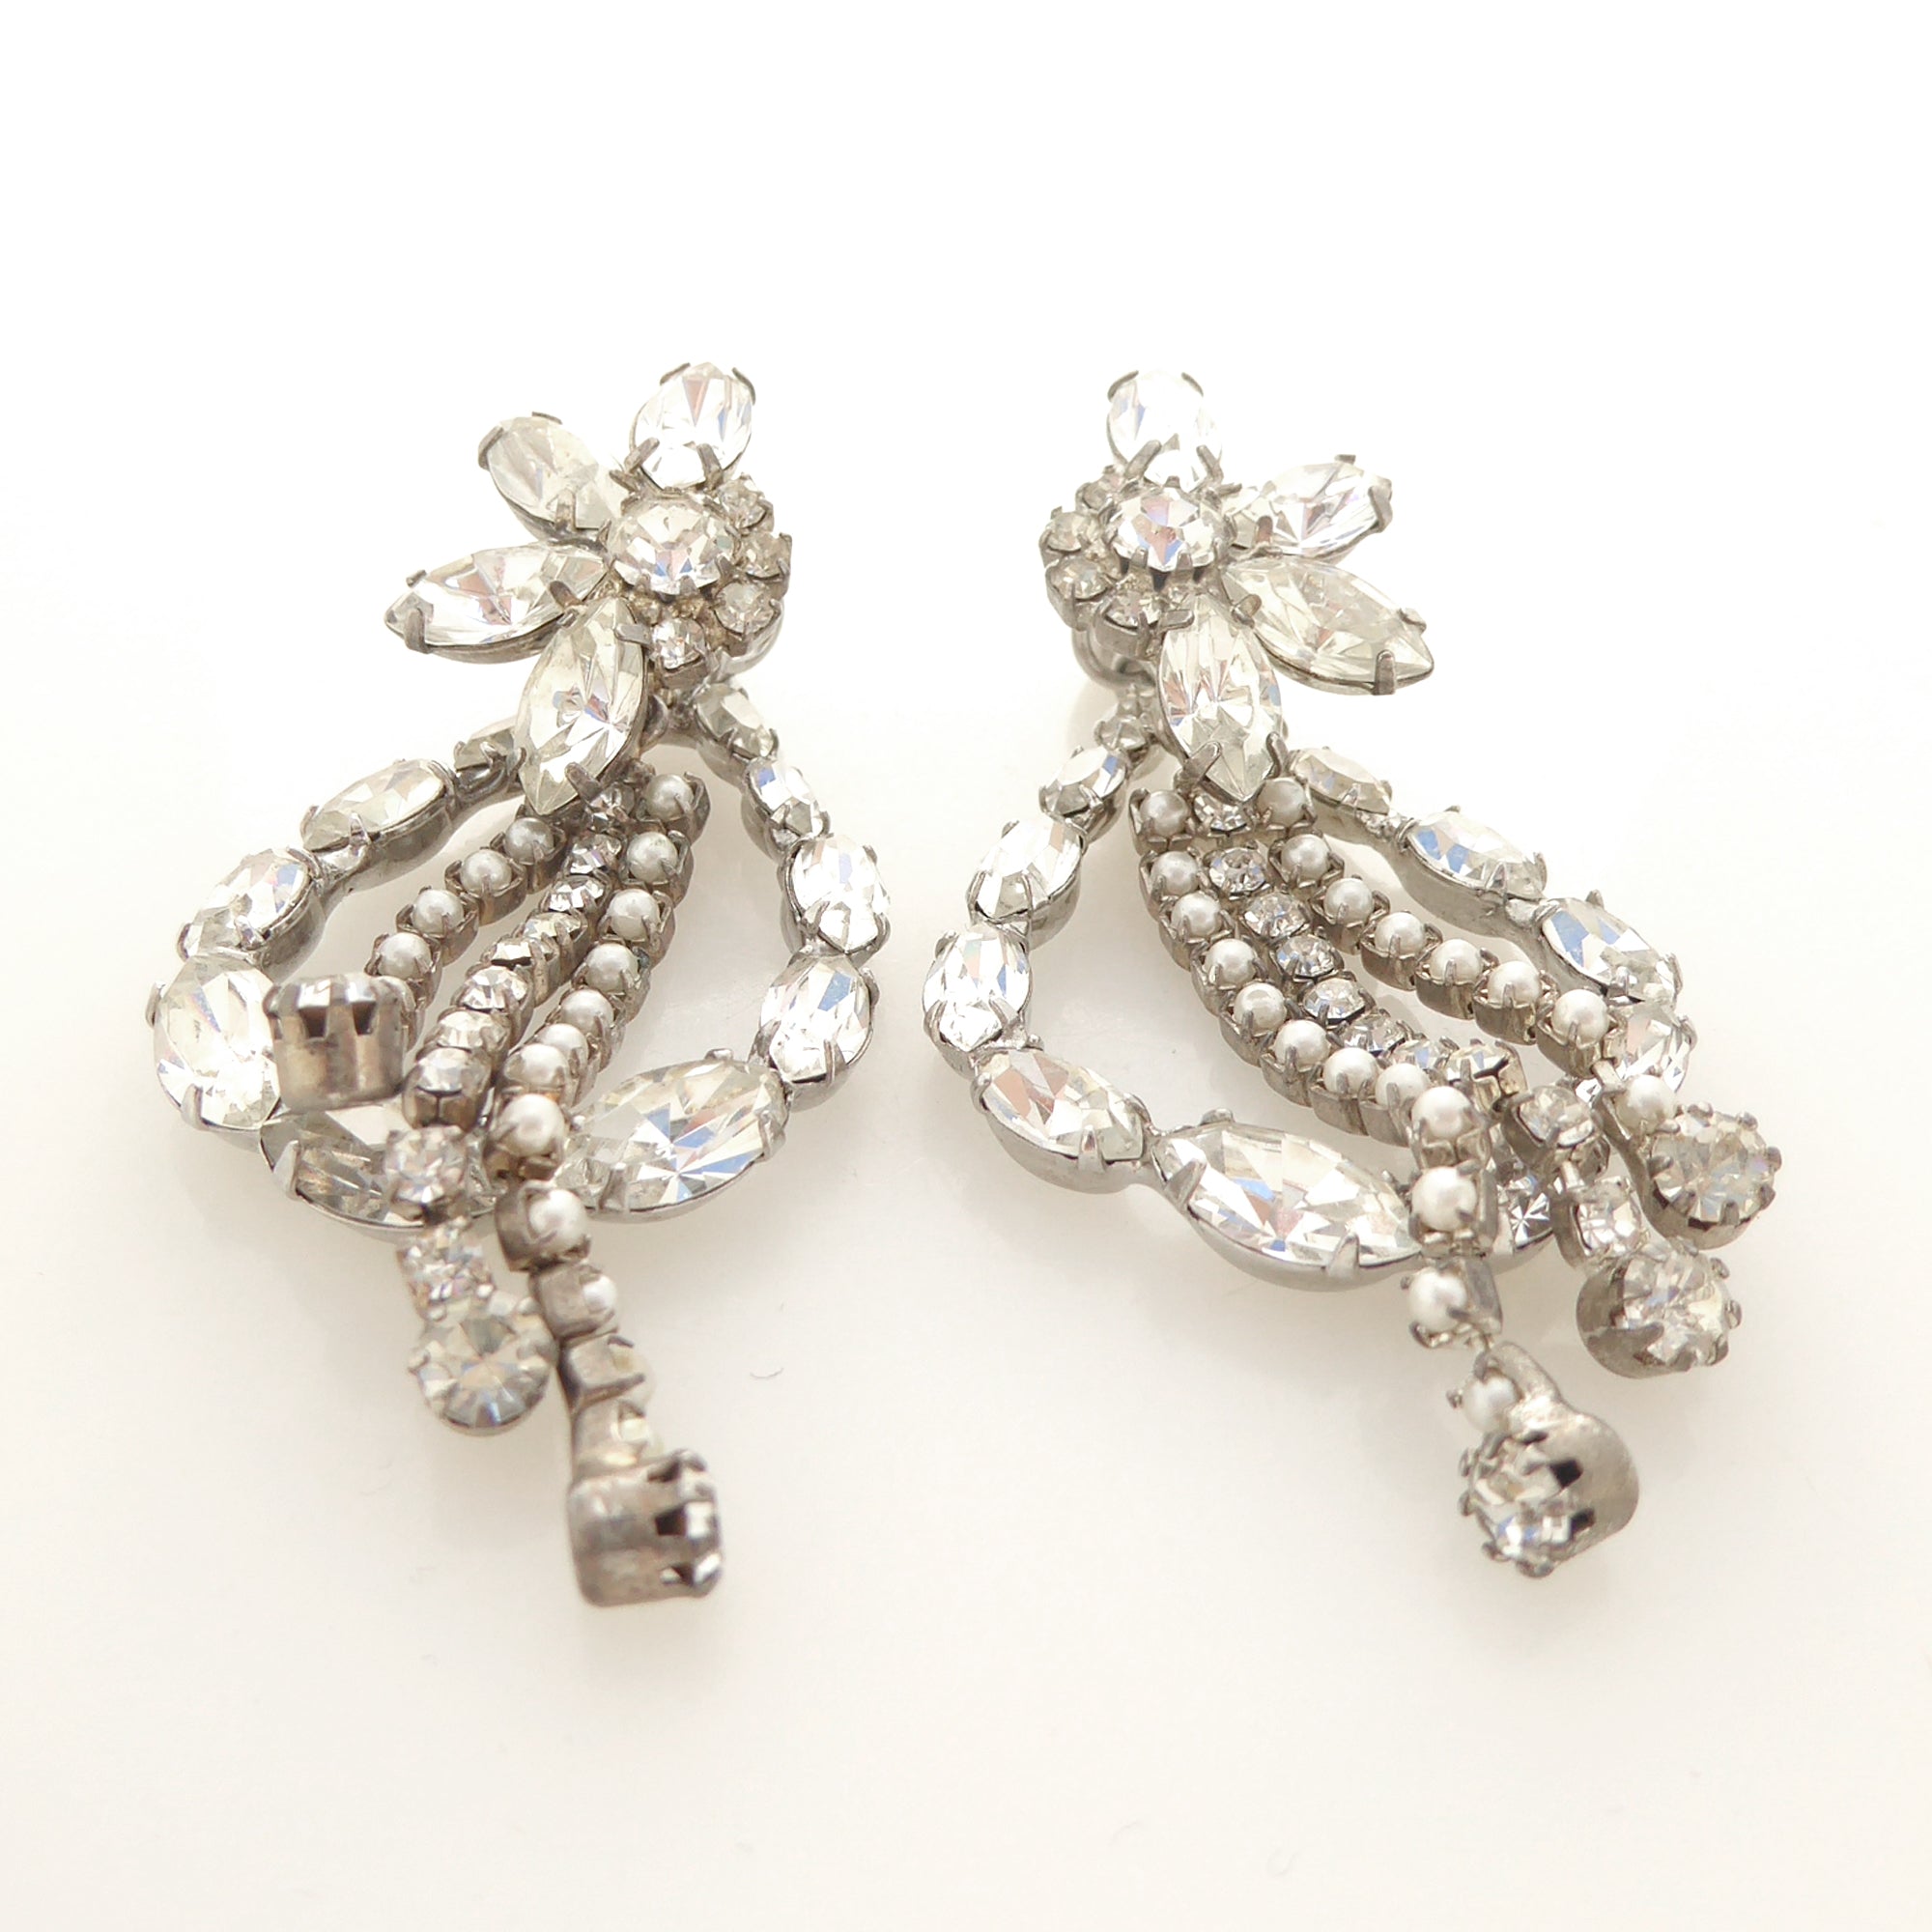 Silver rhinestone flower and teardrop earrings by Jenny Dayco 3